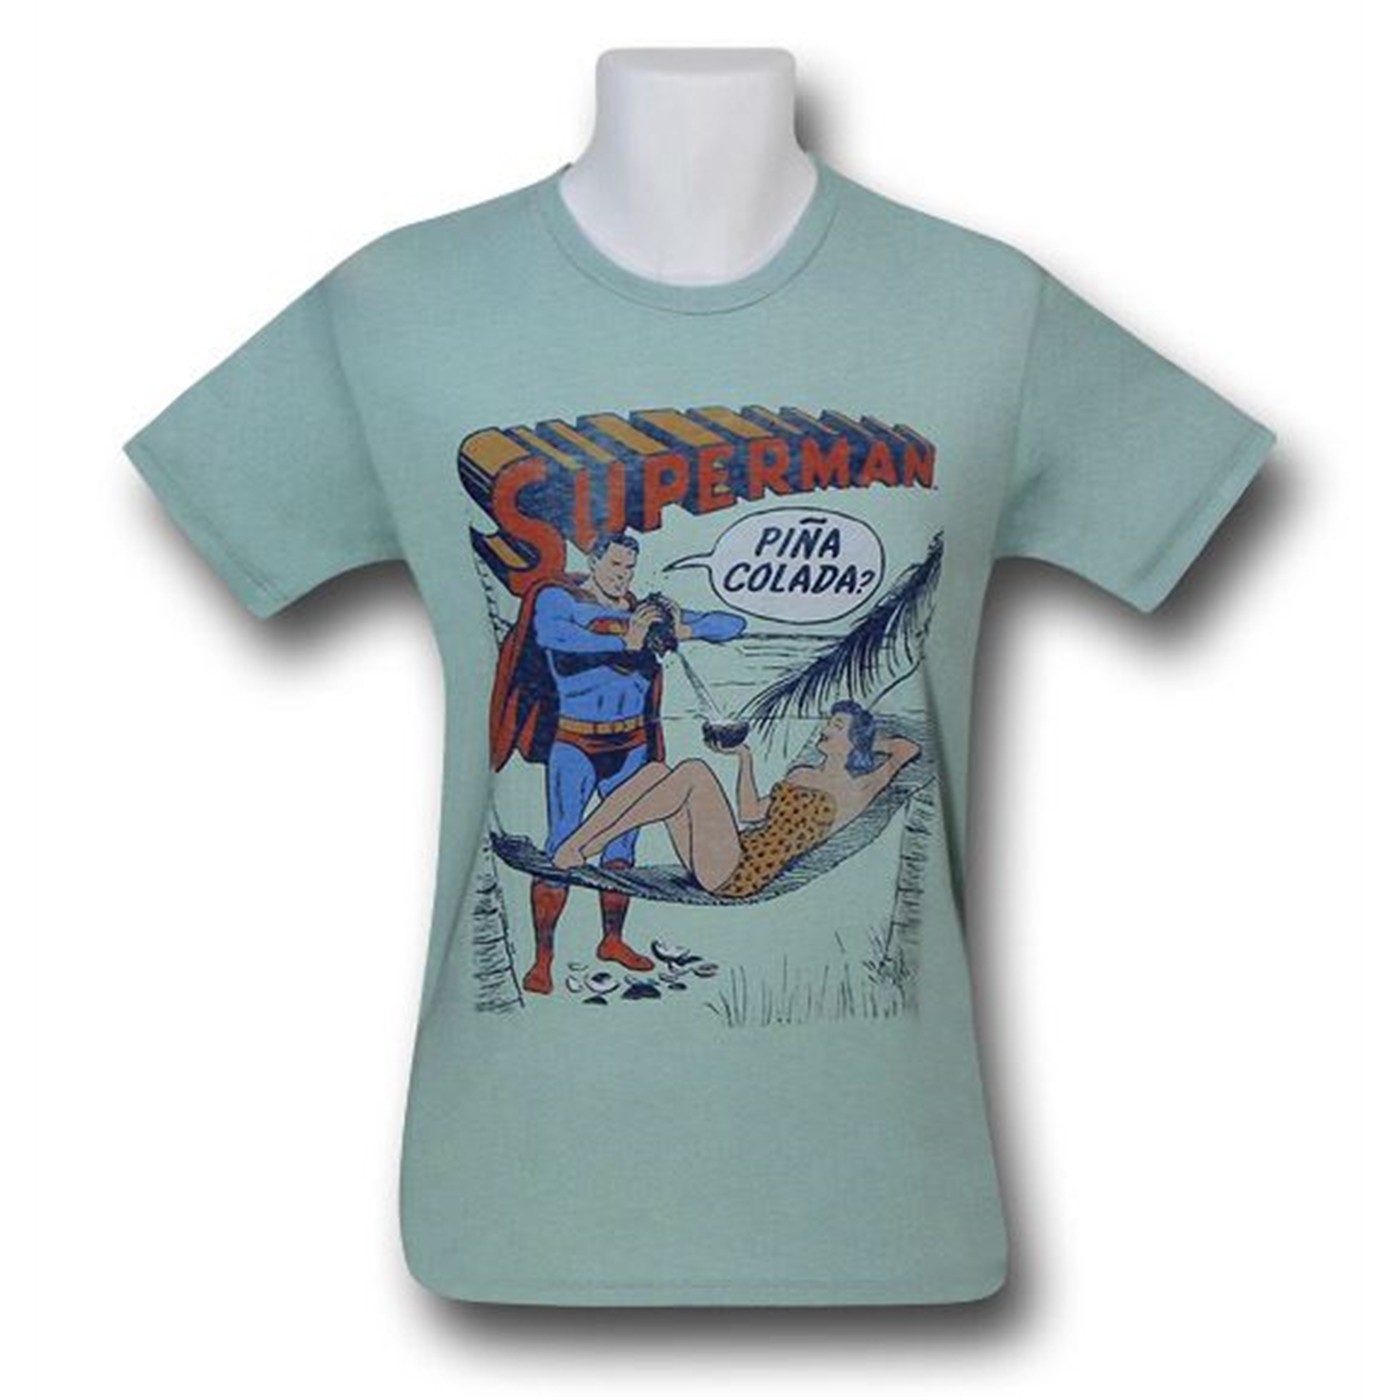 Superman Pina Colada Junk Food T-Shirt